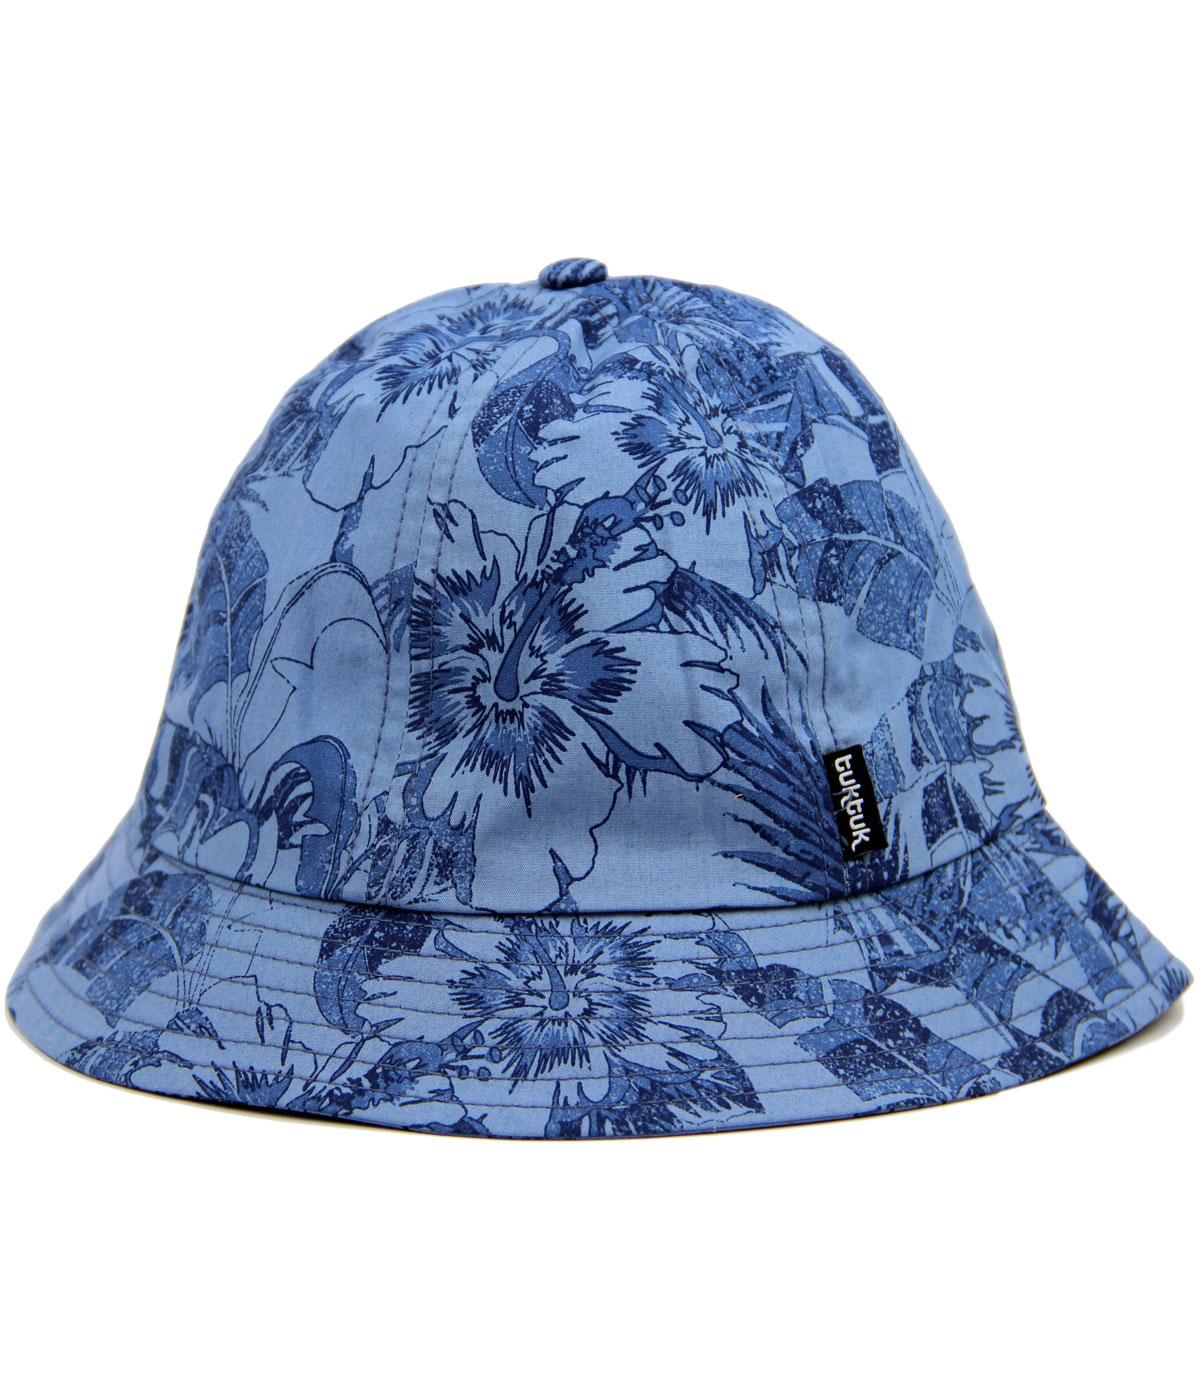 TUKTUK Retro Indie Floral Colonial Bucket Hat